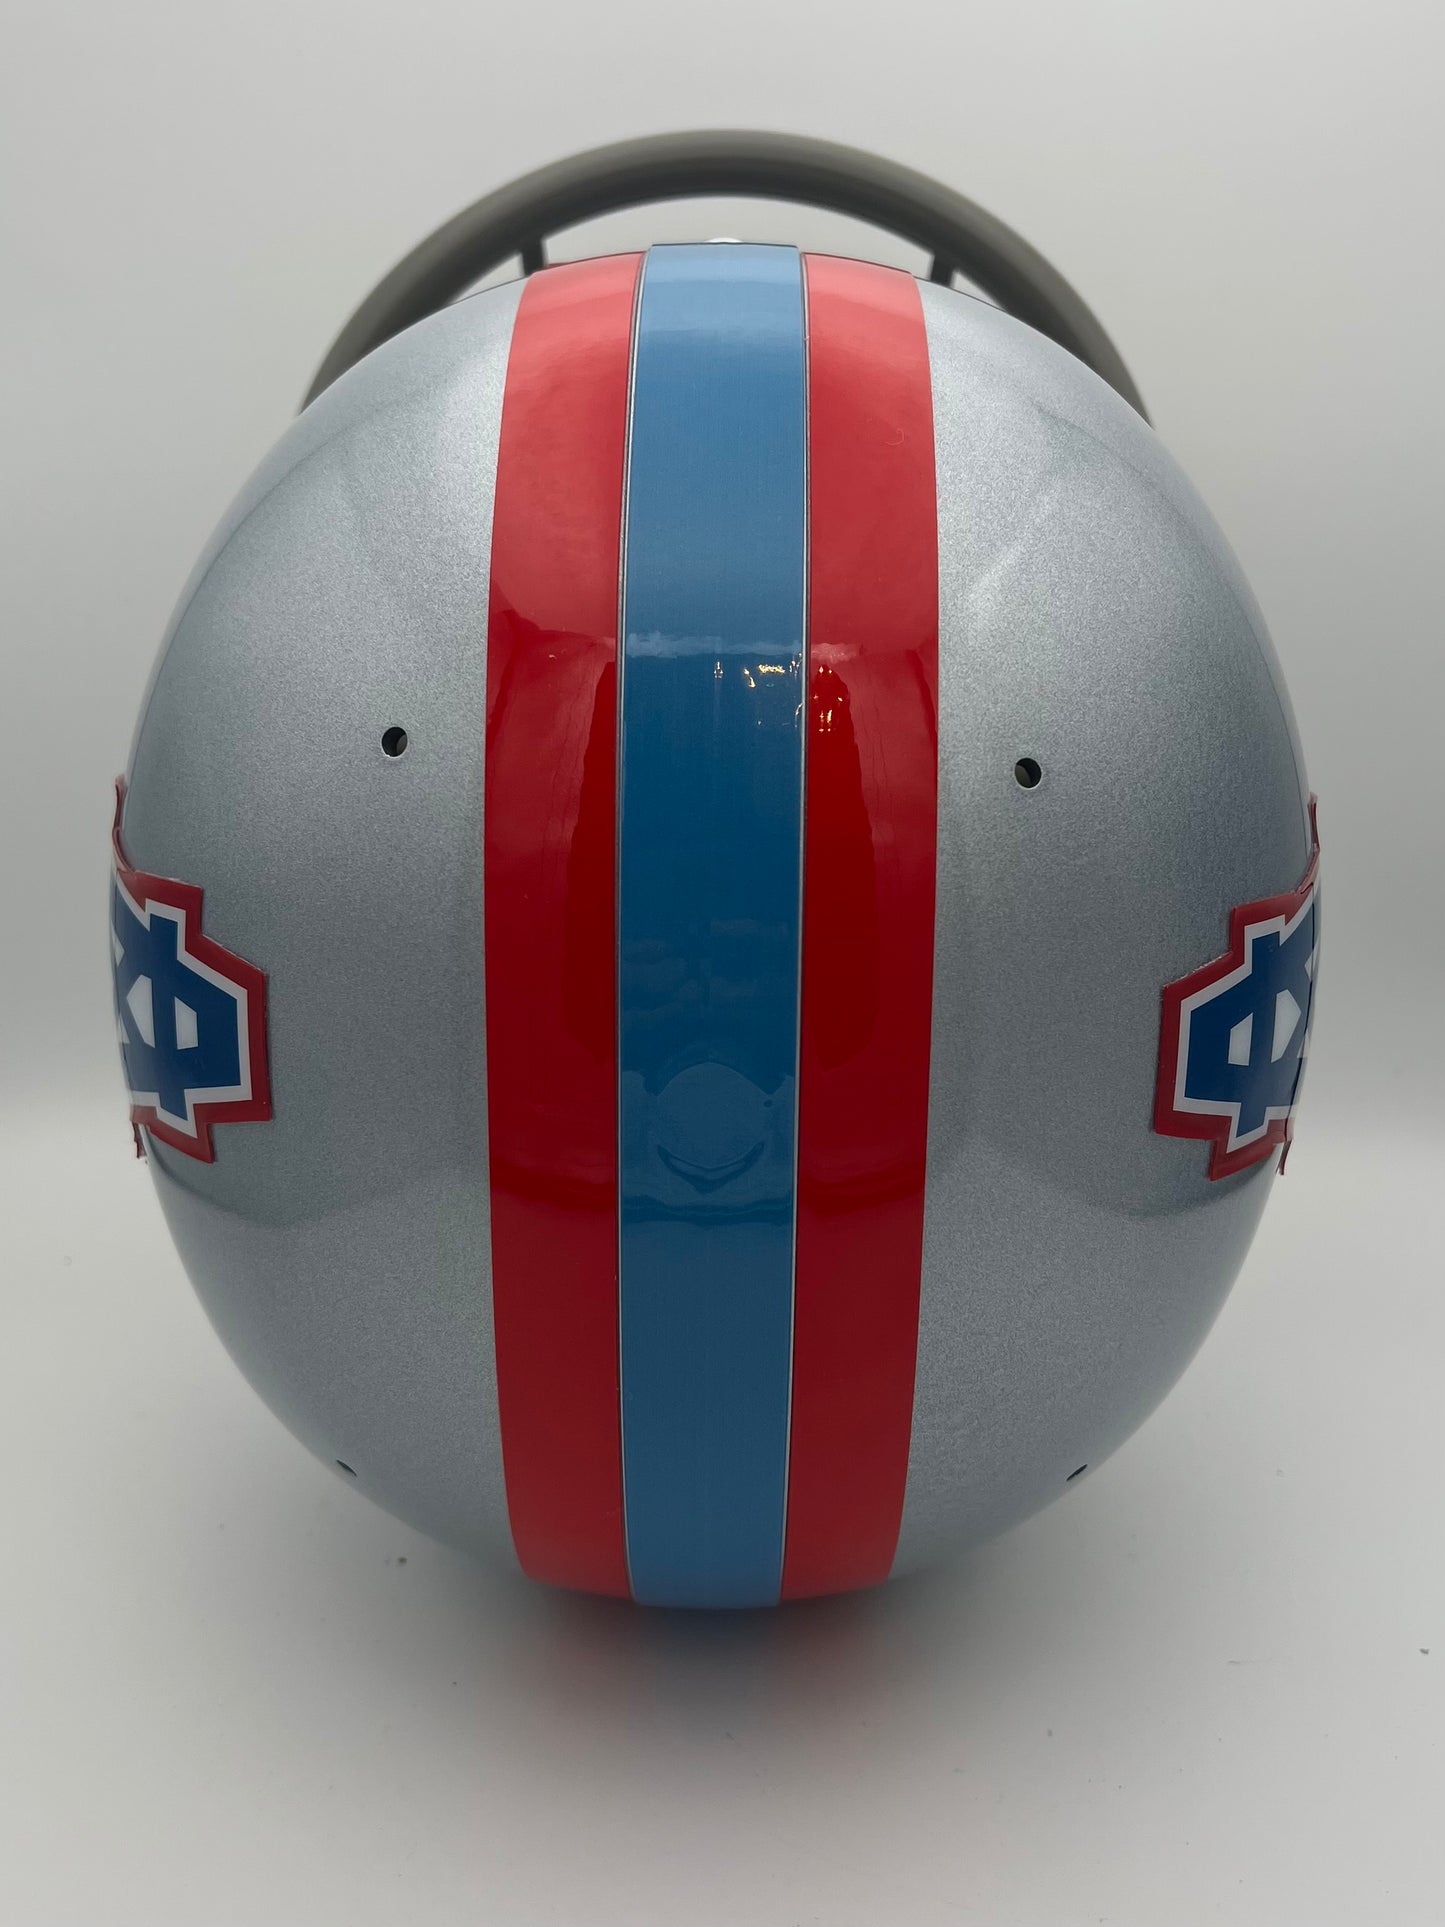 Vintage TK-2 Style Football Helmet 1970 Houston Oilers Sports Mem, Cards & Fan Shop:Fan Apparel & Souvenirs:Football-NFL Riddell   